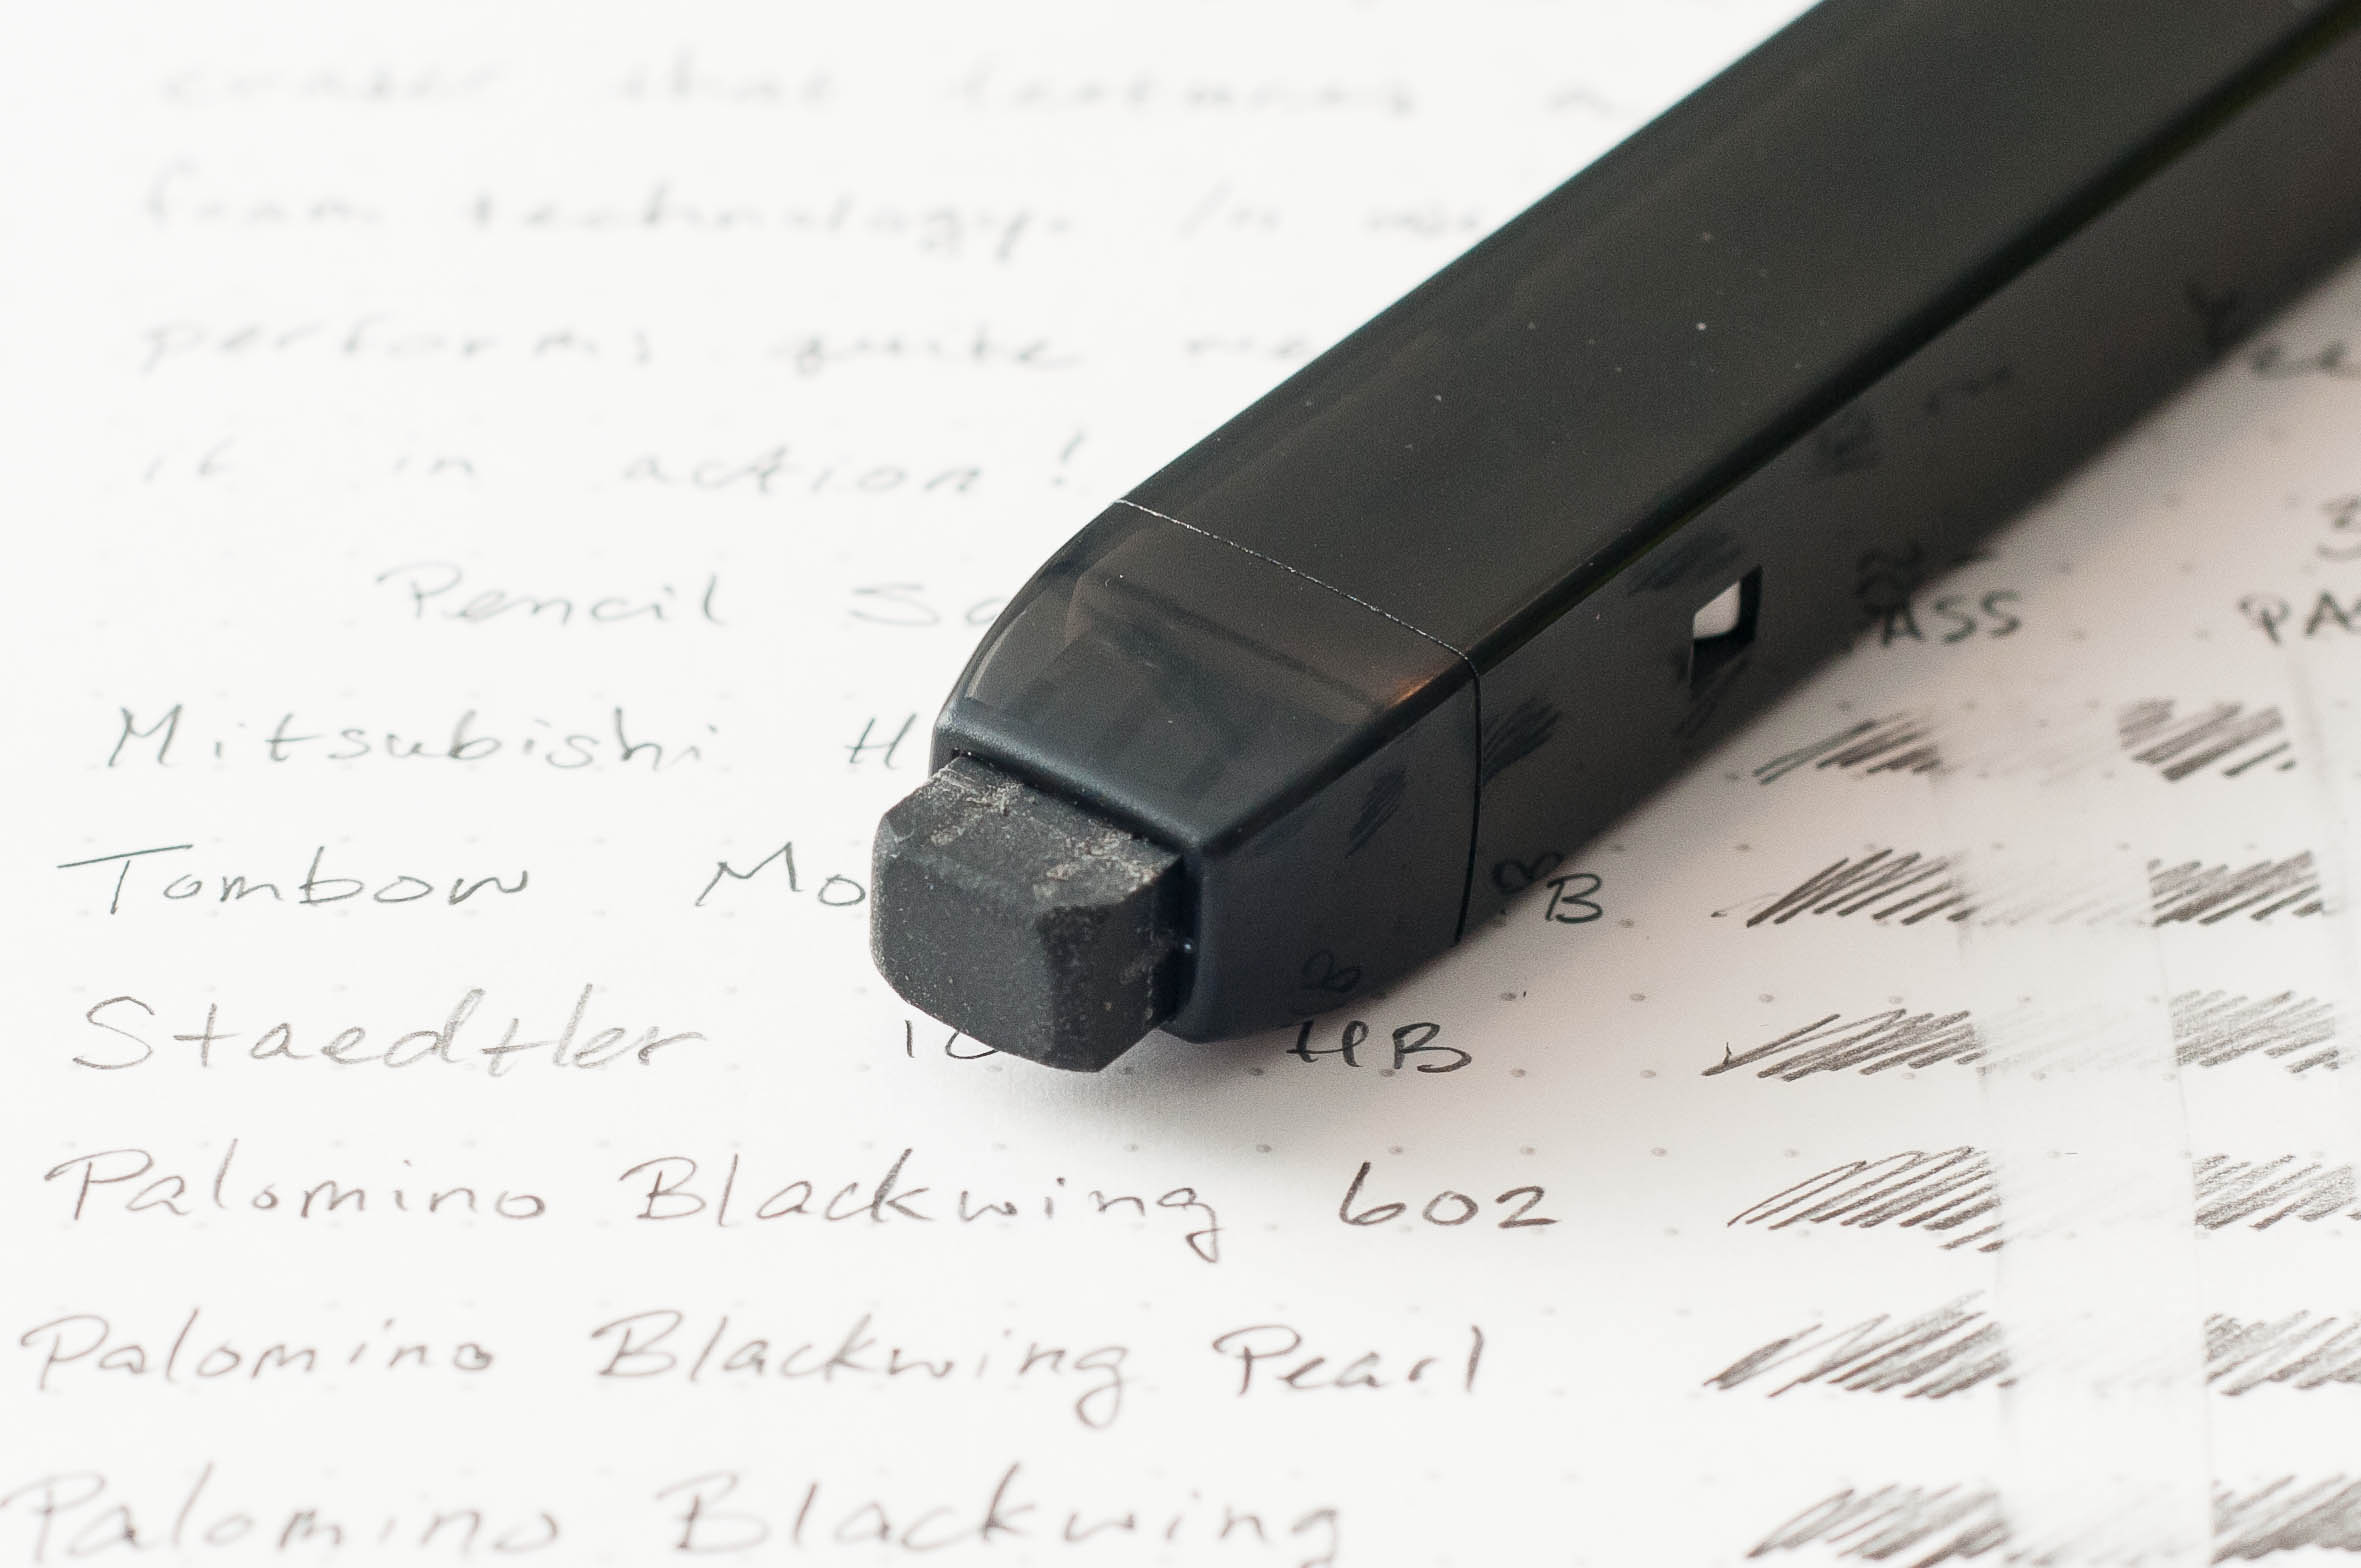 Sakura Sumo Grip Retractable Eraser Review — The Pen Addict